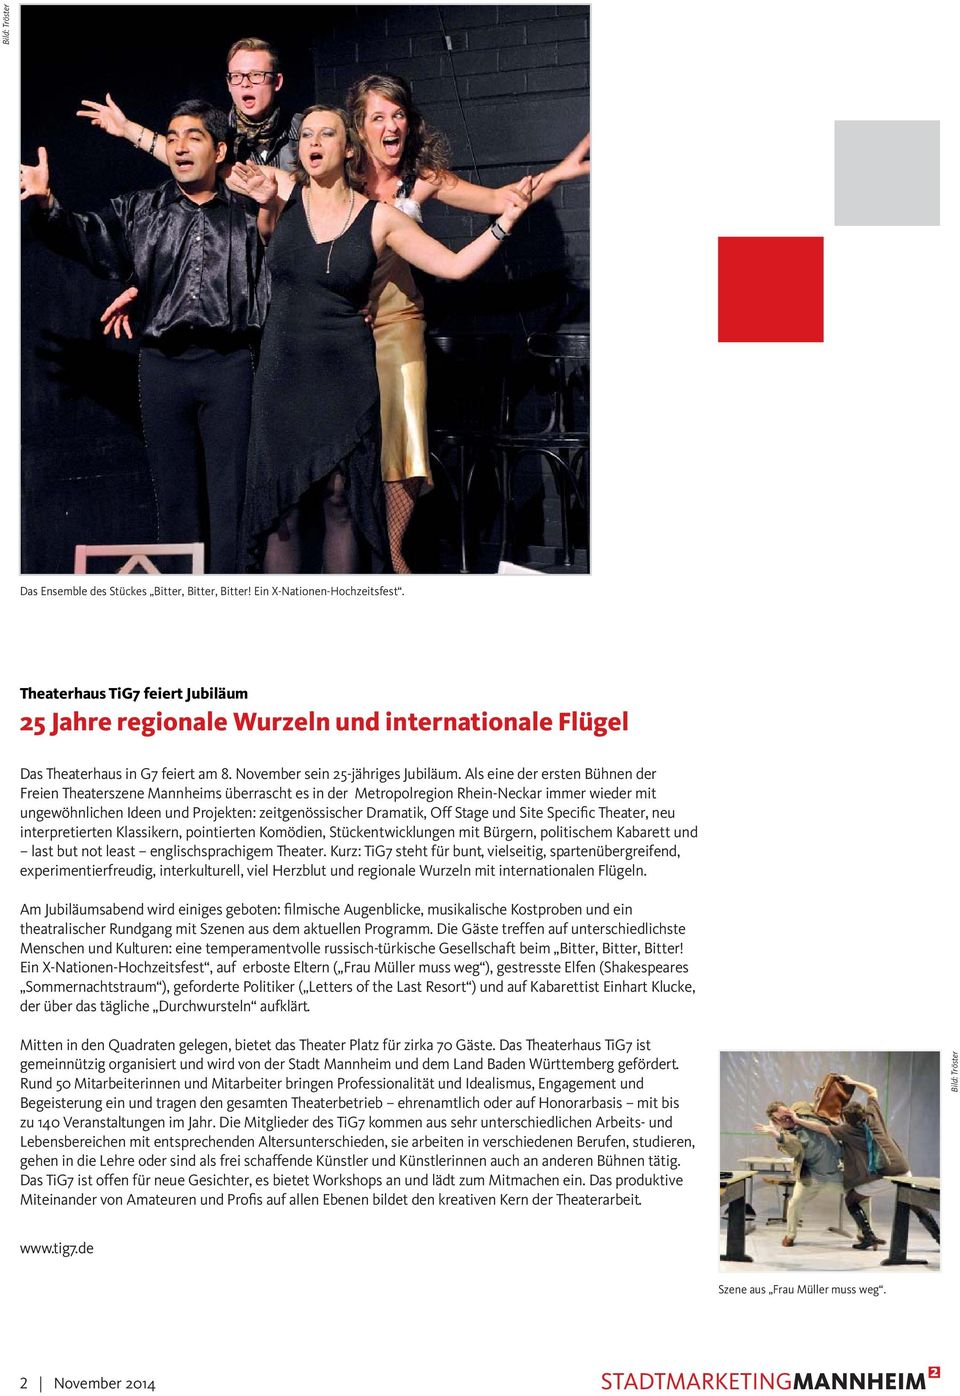 Als eine der ersten Bühnen der Freien Theaterszene Mannheims überrascht es in der Metropolregion Rhein-Neckar immer wieder mit ungewöhnlichen Ideen und Projekten: zeitgenössischer Dramatik, Off Stage